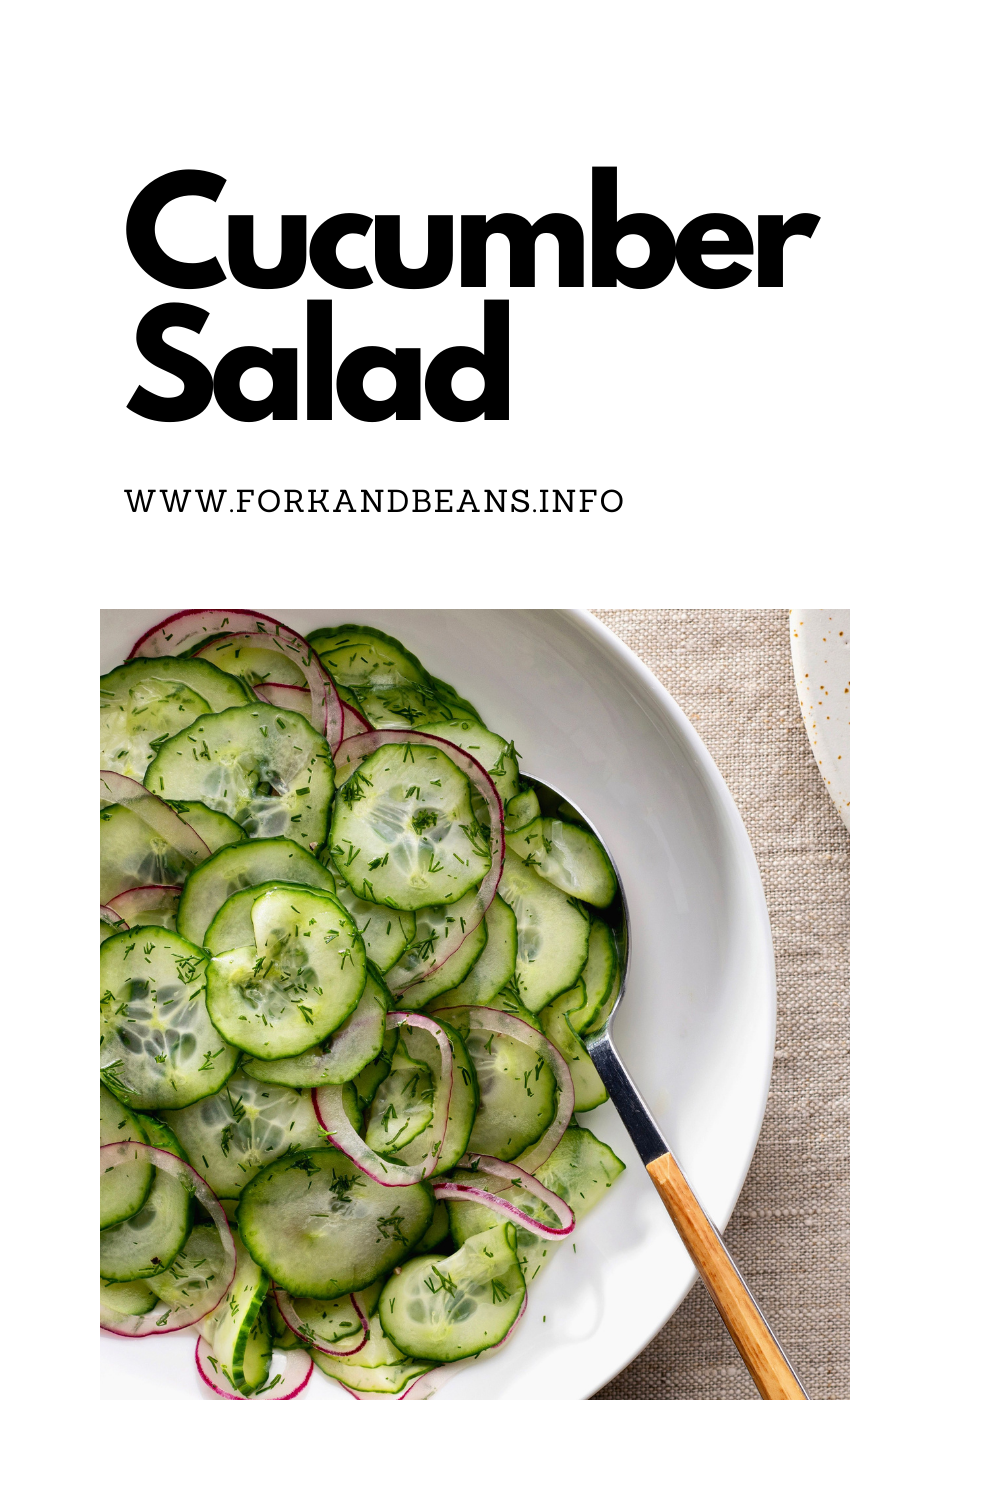 German Cucumber-Dill Salad (Gurkensalat)